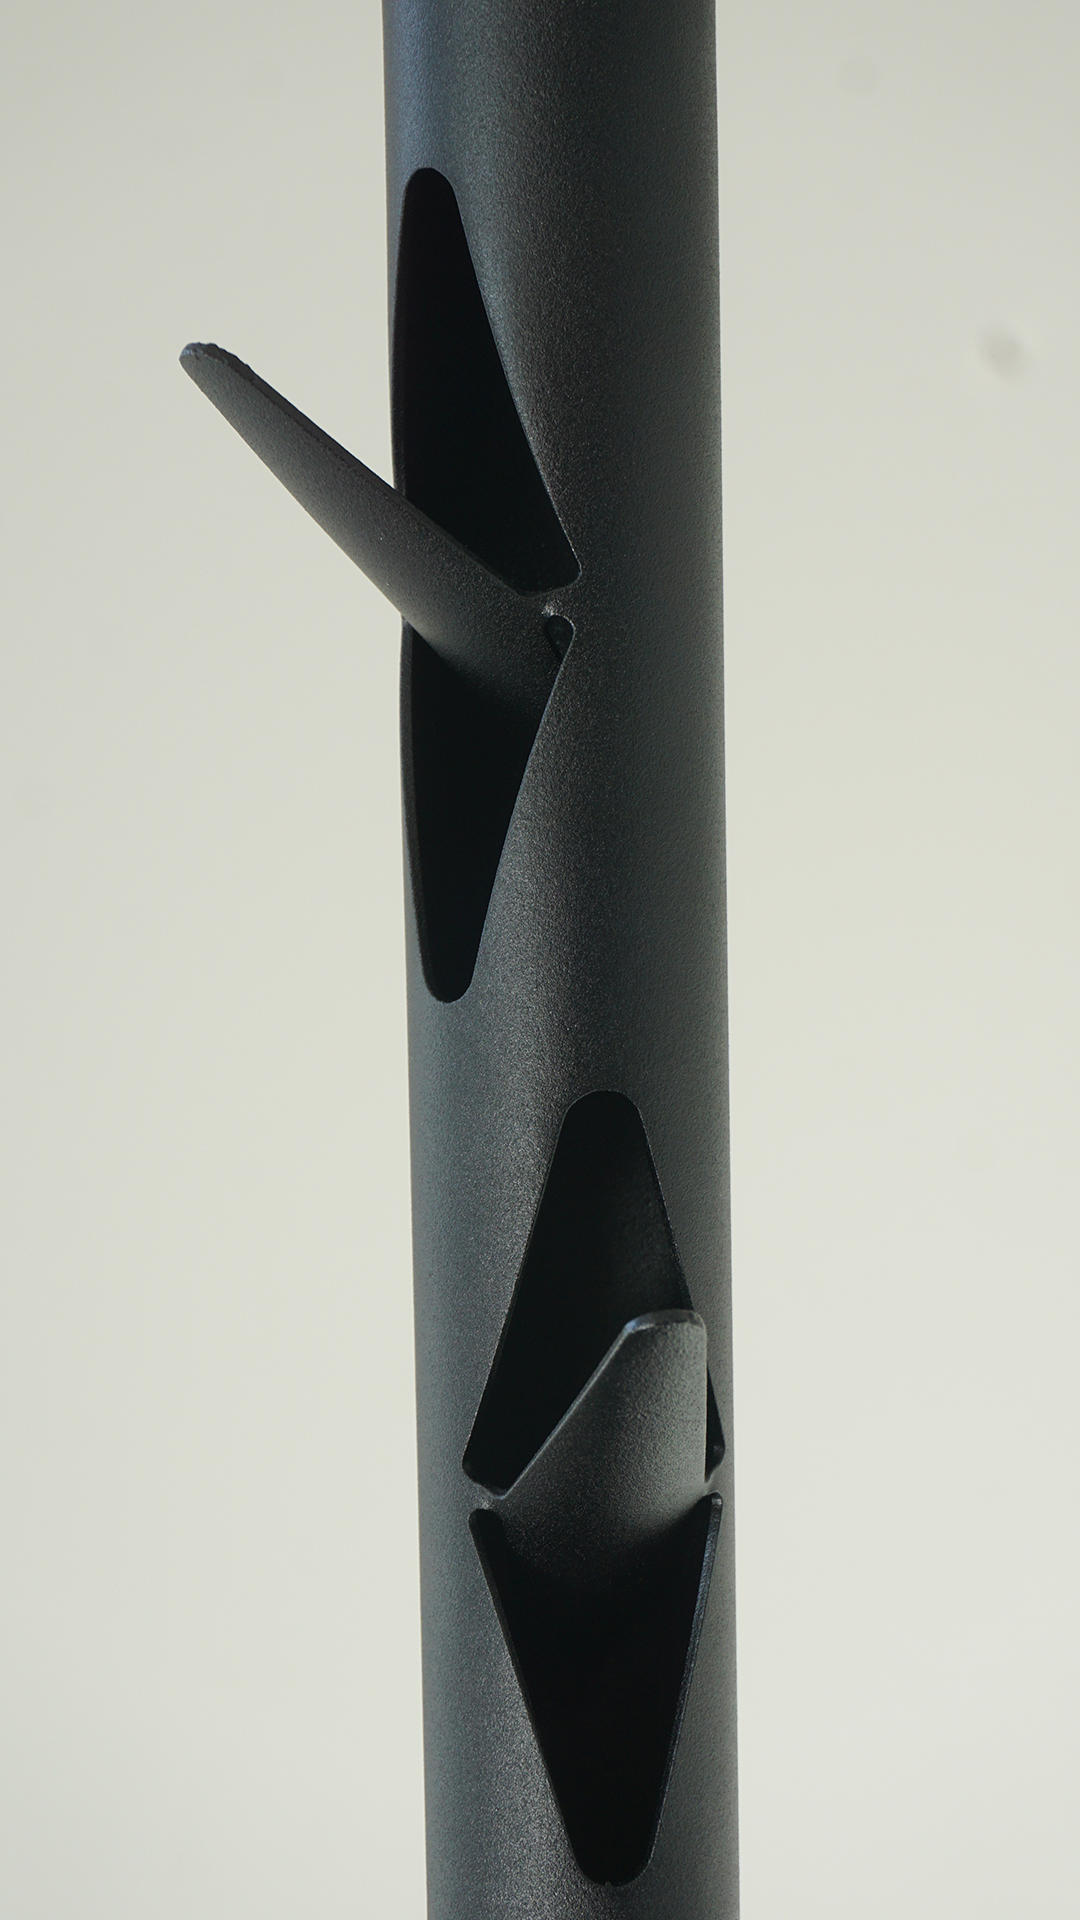 Laserlõigatud riidenagi toru - Lasercut coat rack pipe Arco Metal OÜ Saue 670 9616